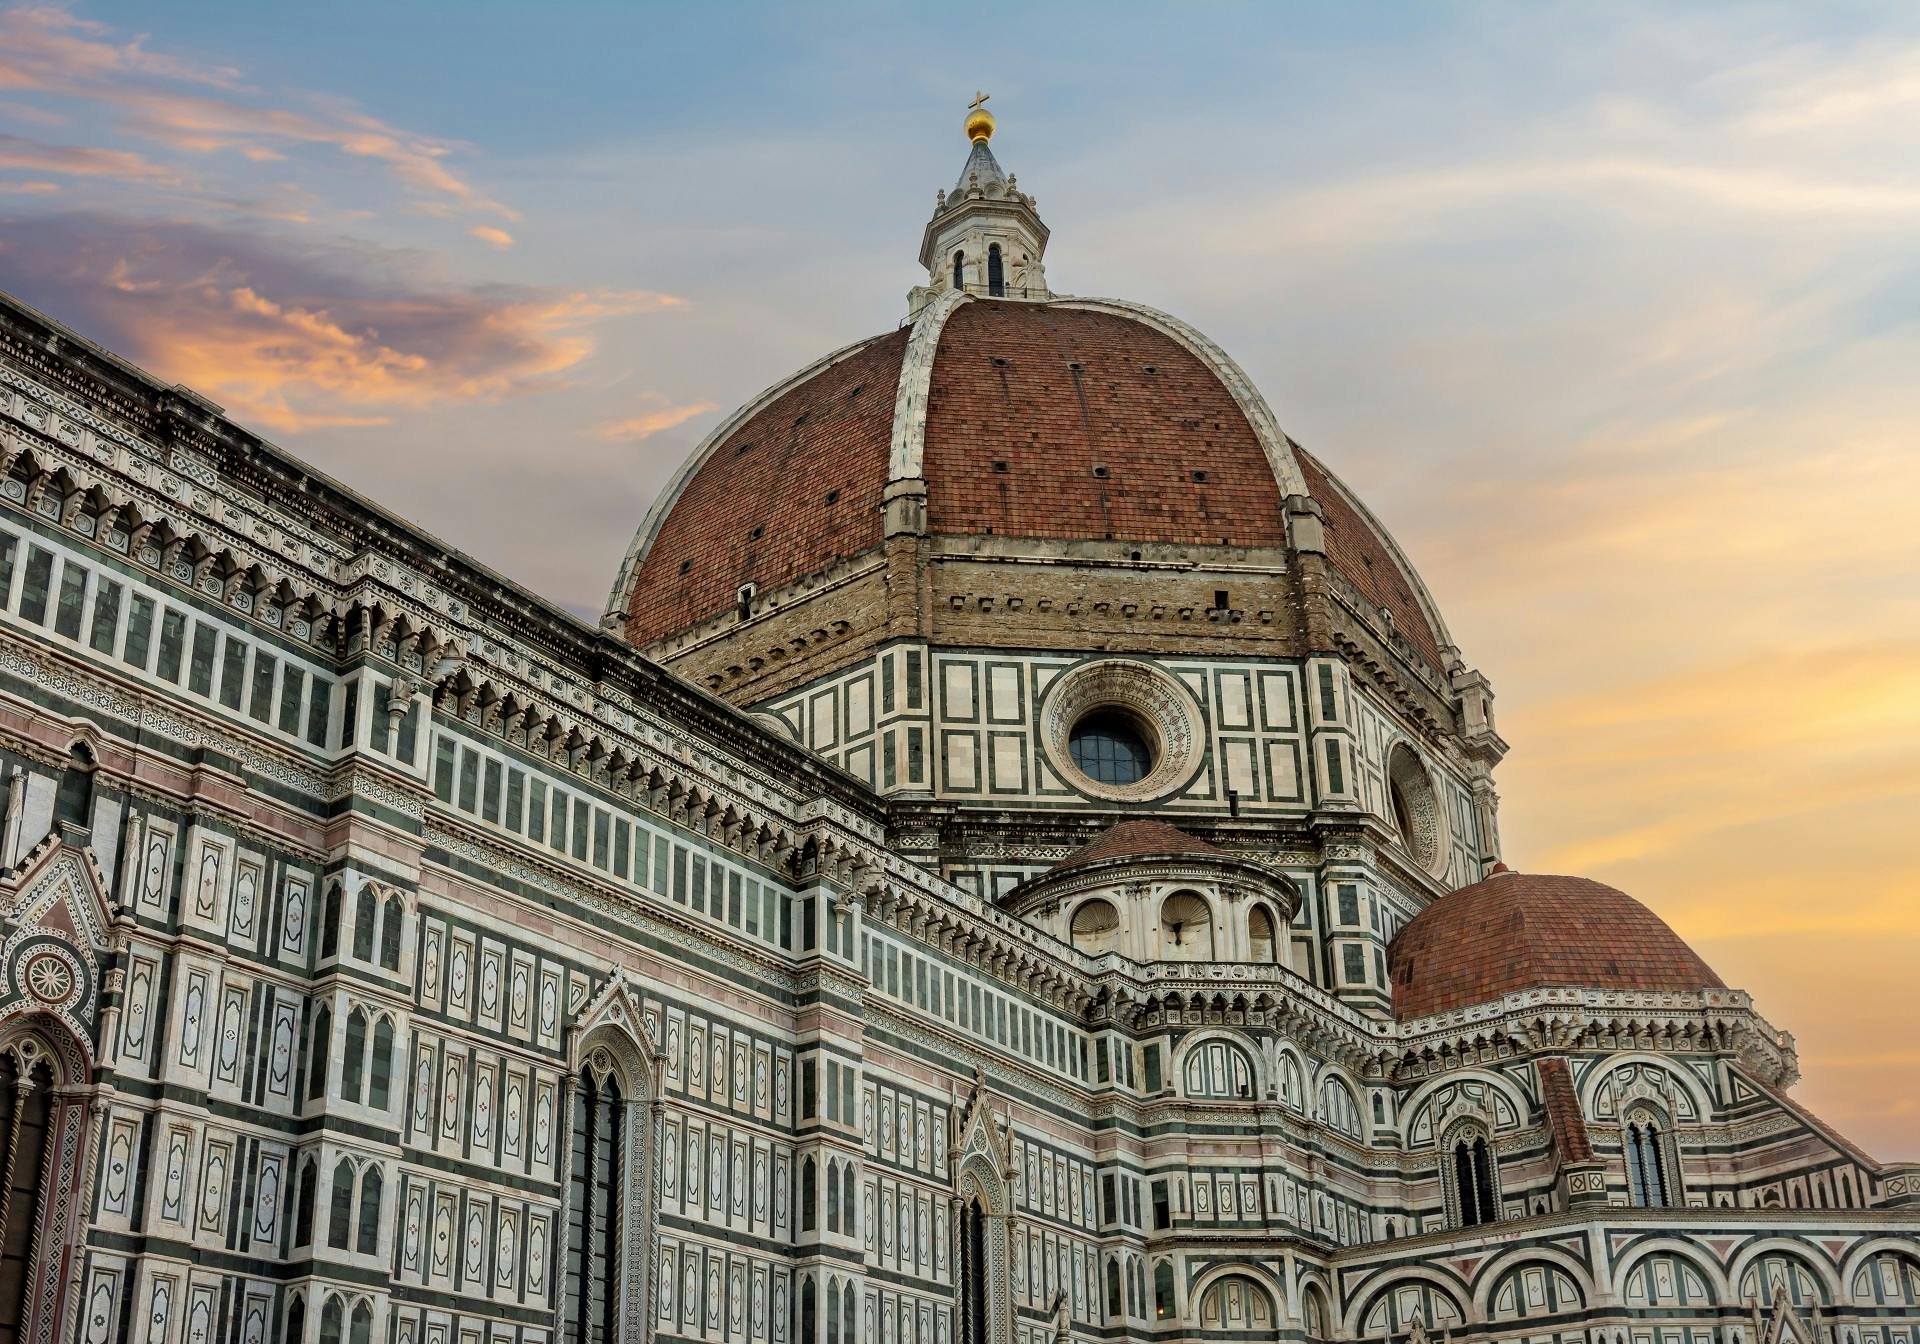 Excursão exclusiva ao Duomo de Florença após o expediente, incluindo terraços privativos